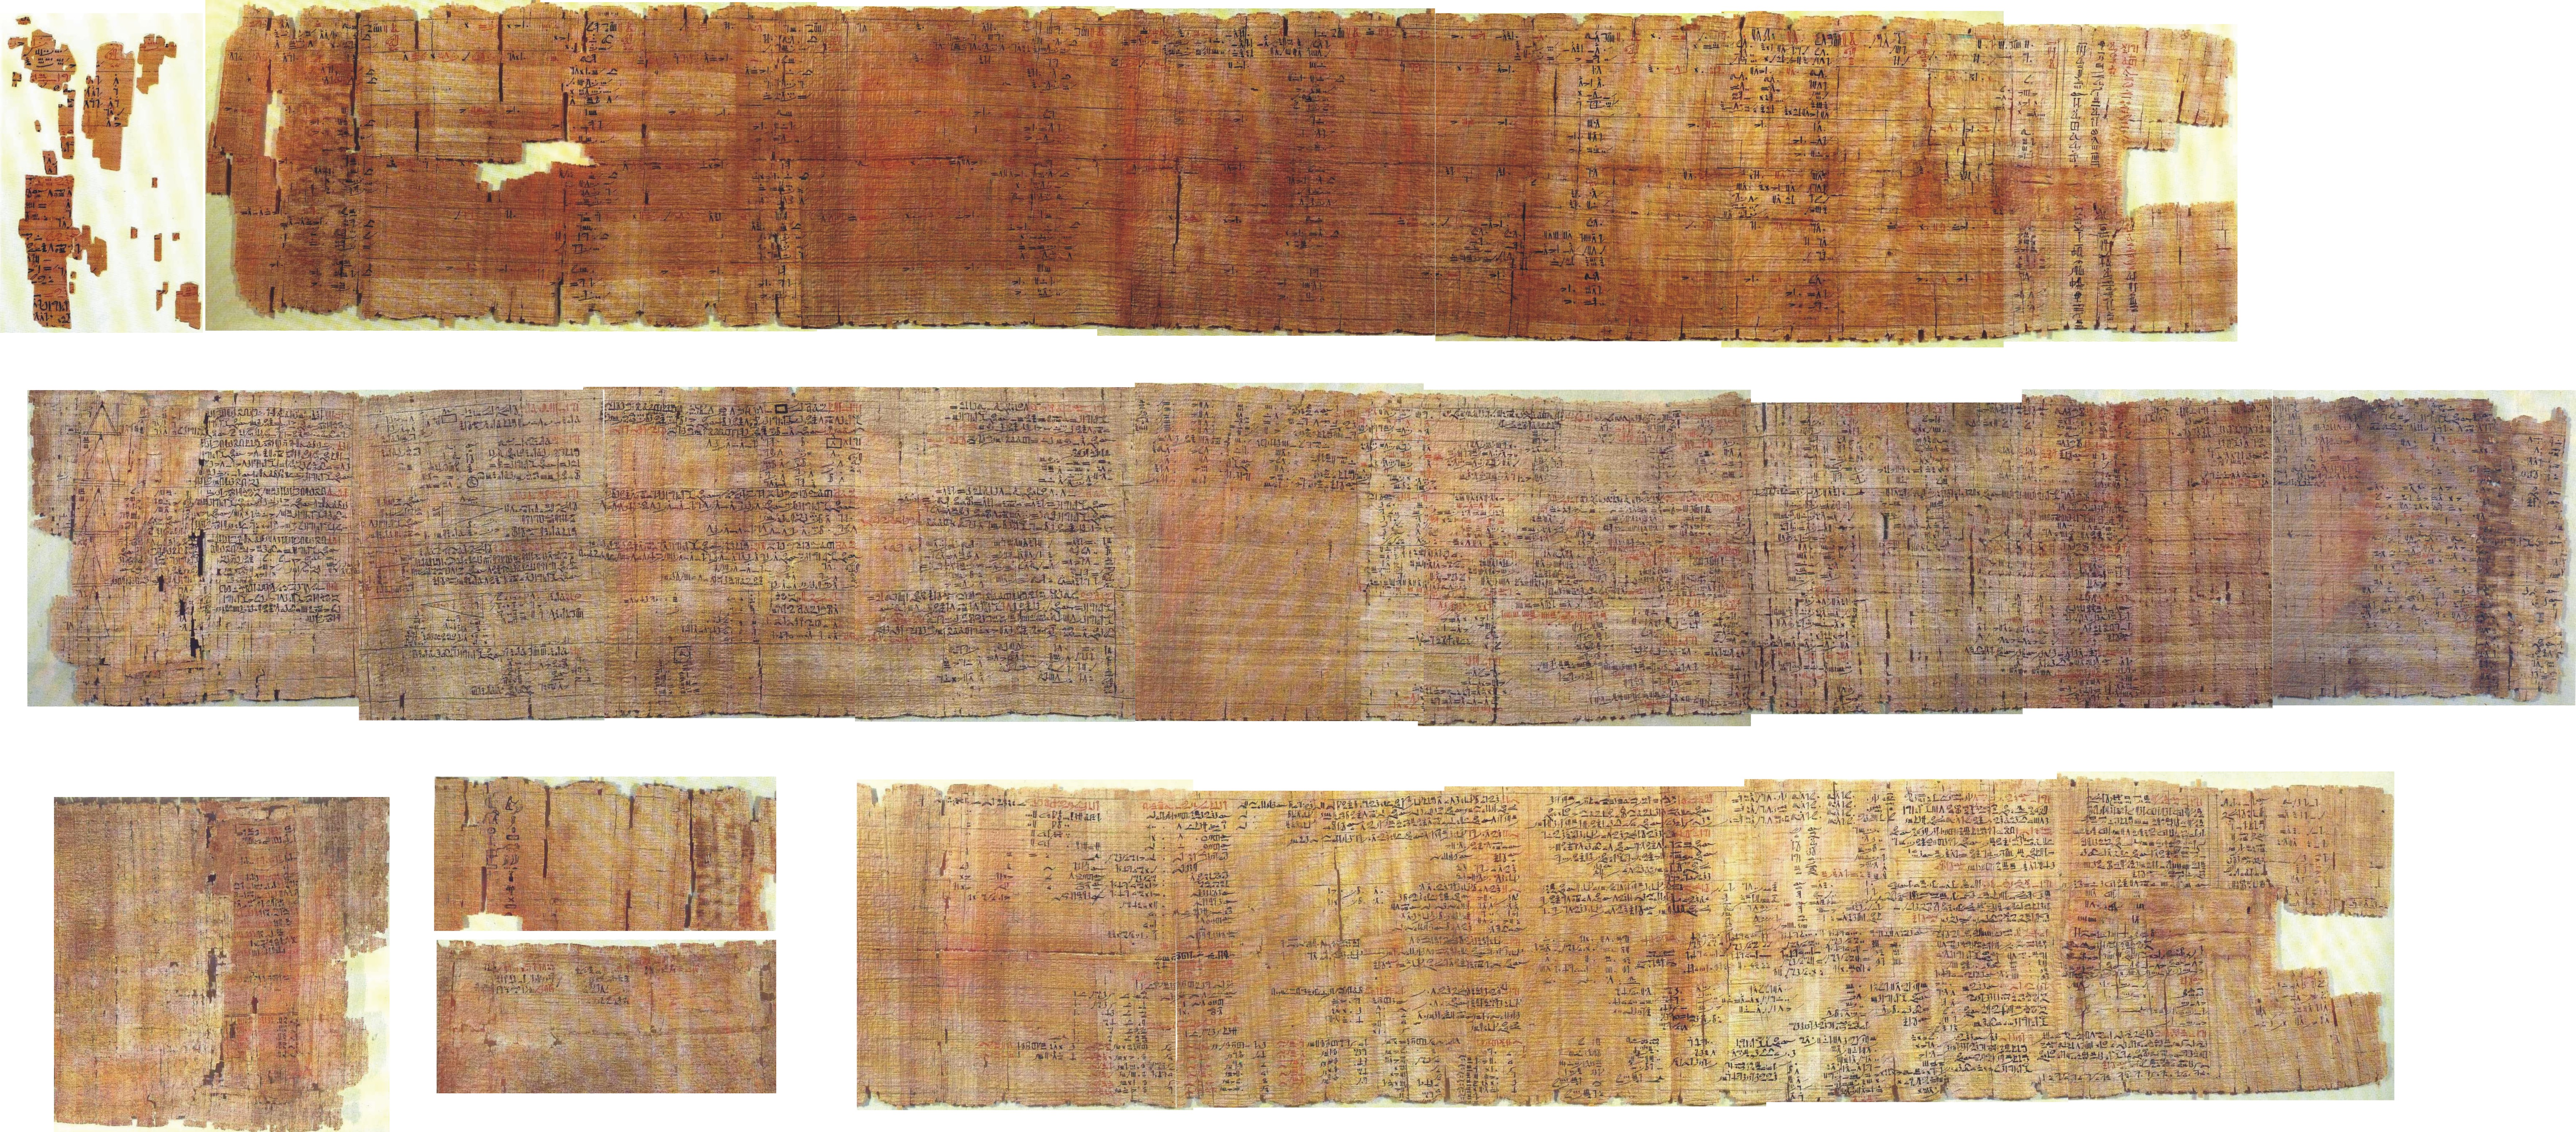 Ринда папирус | это... Что такое Ринда папирус?